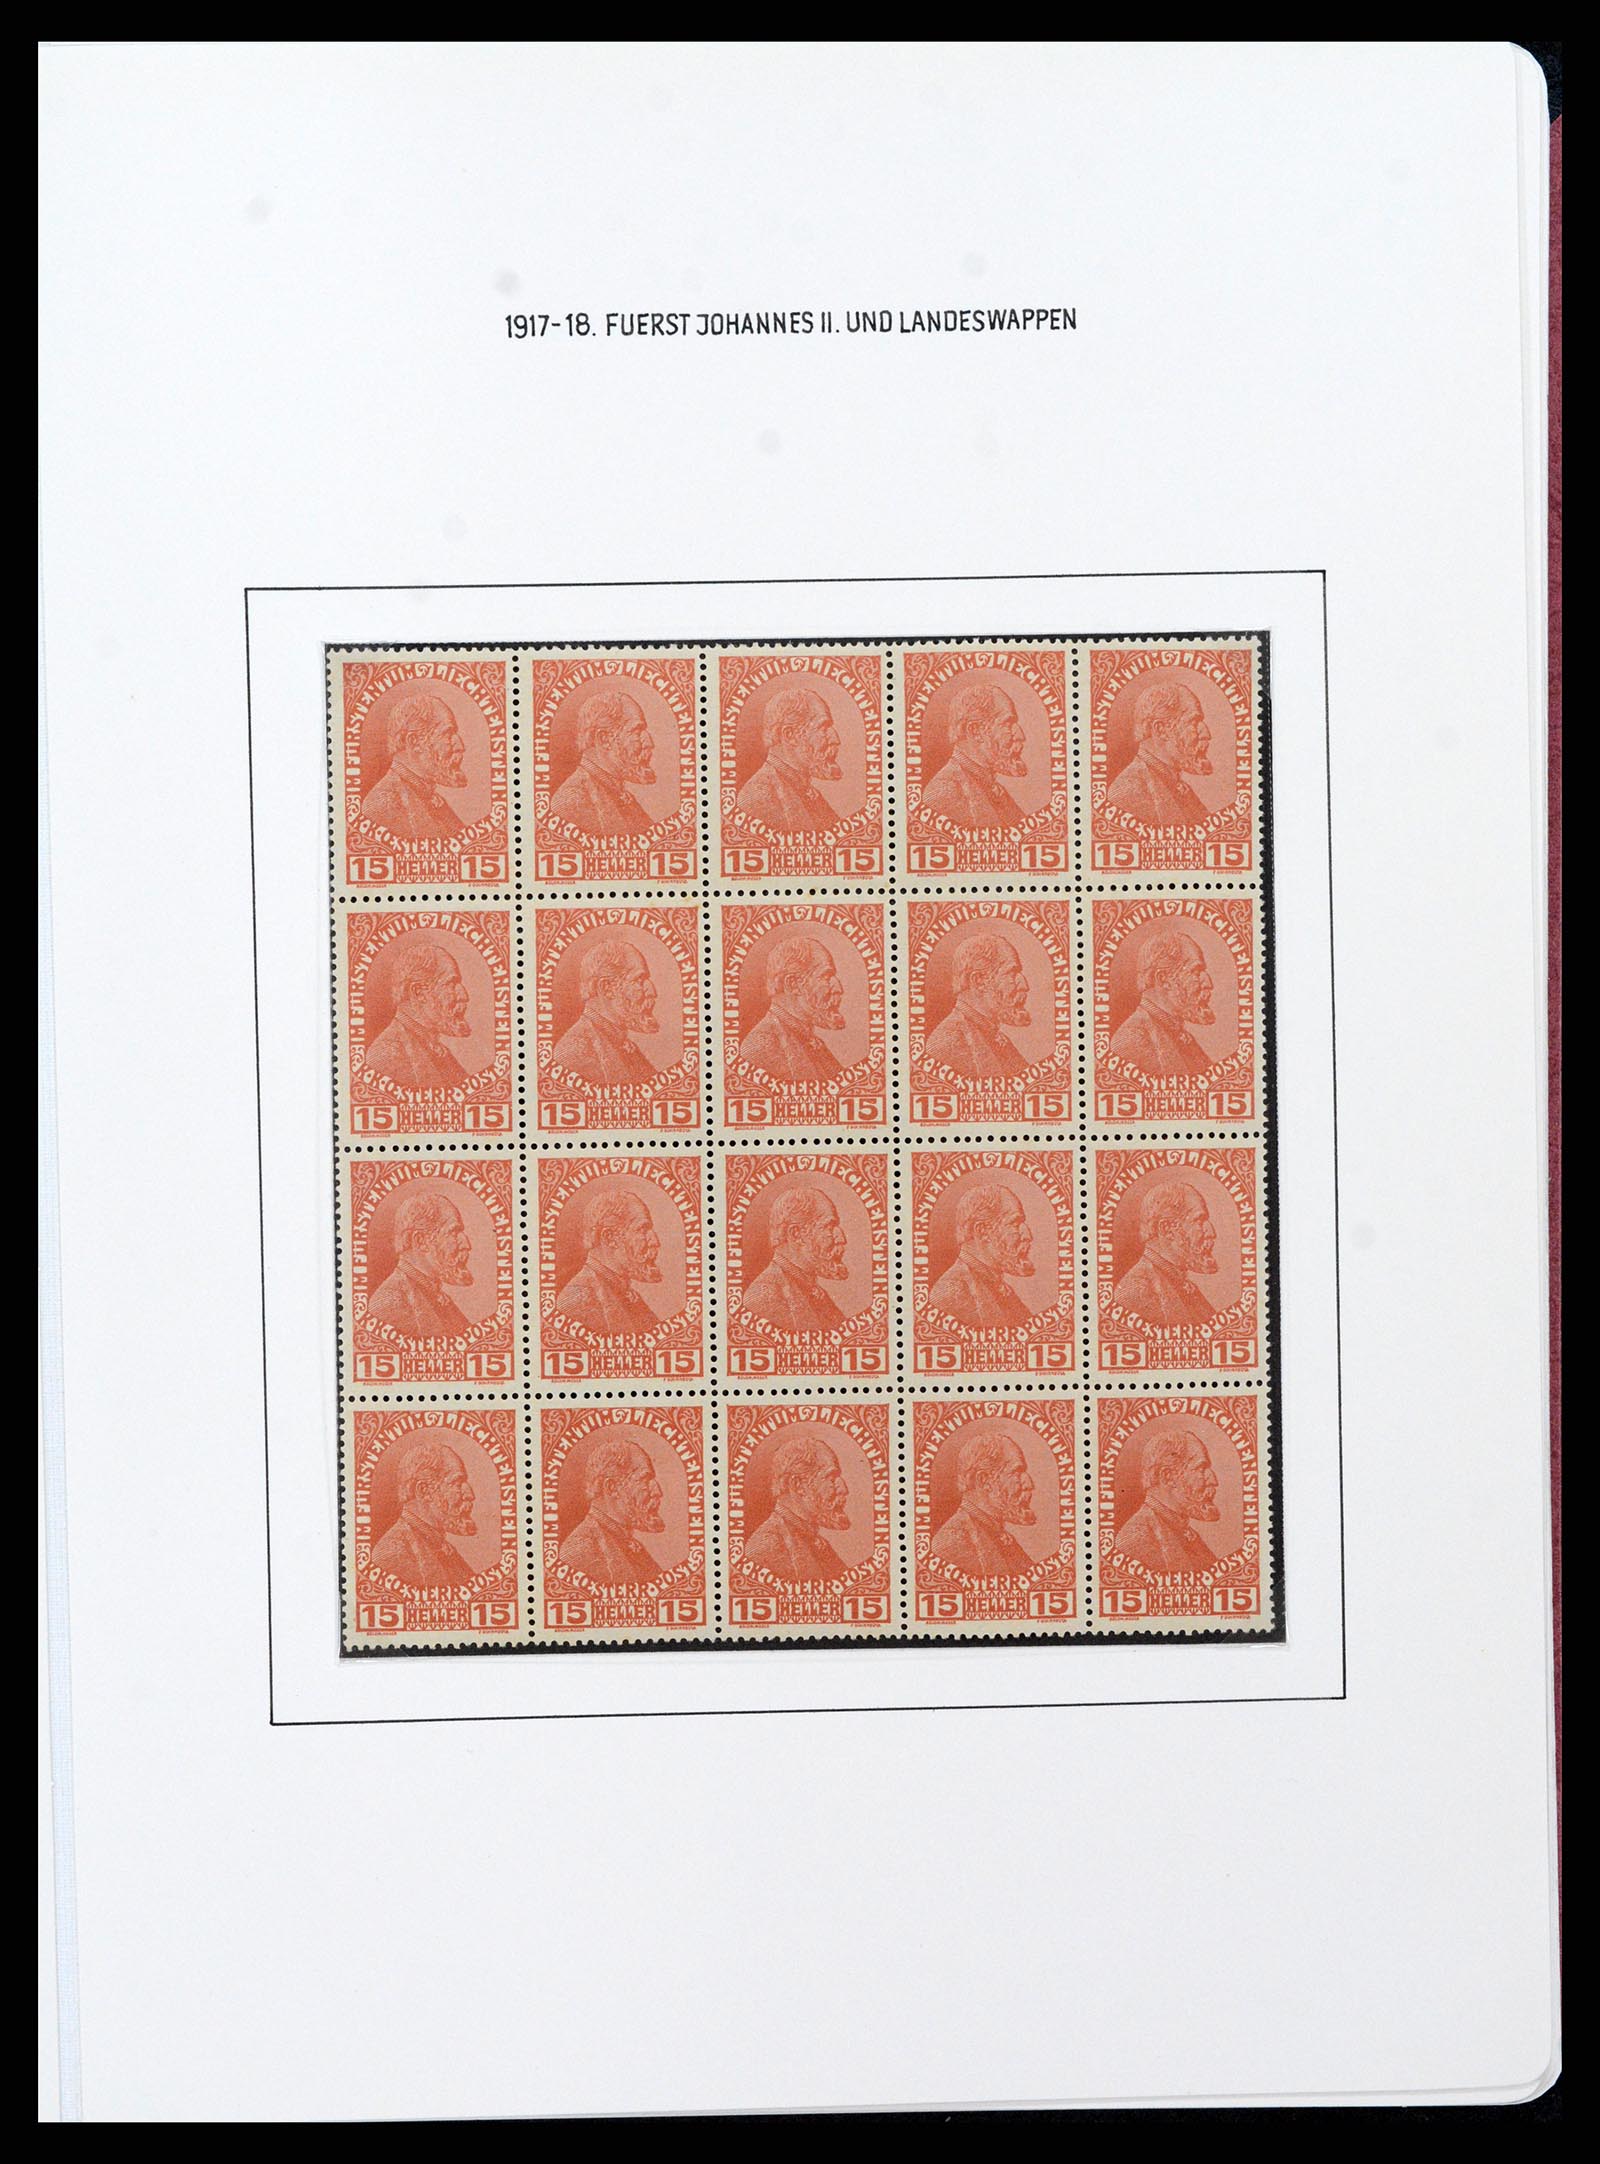 37150 0034 - Stamp collection 37150 Liechtenstein supercollection 1912-1962.